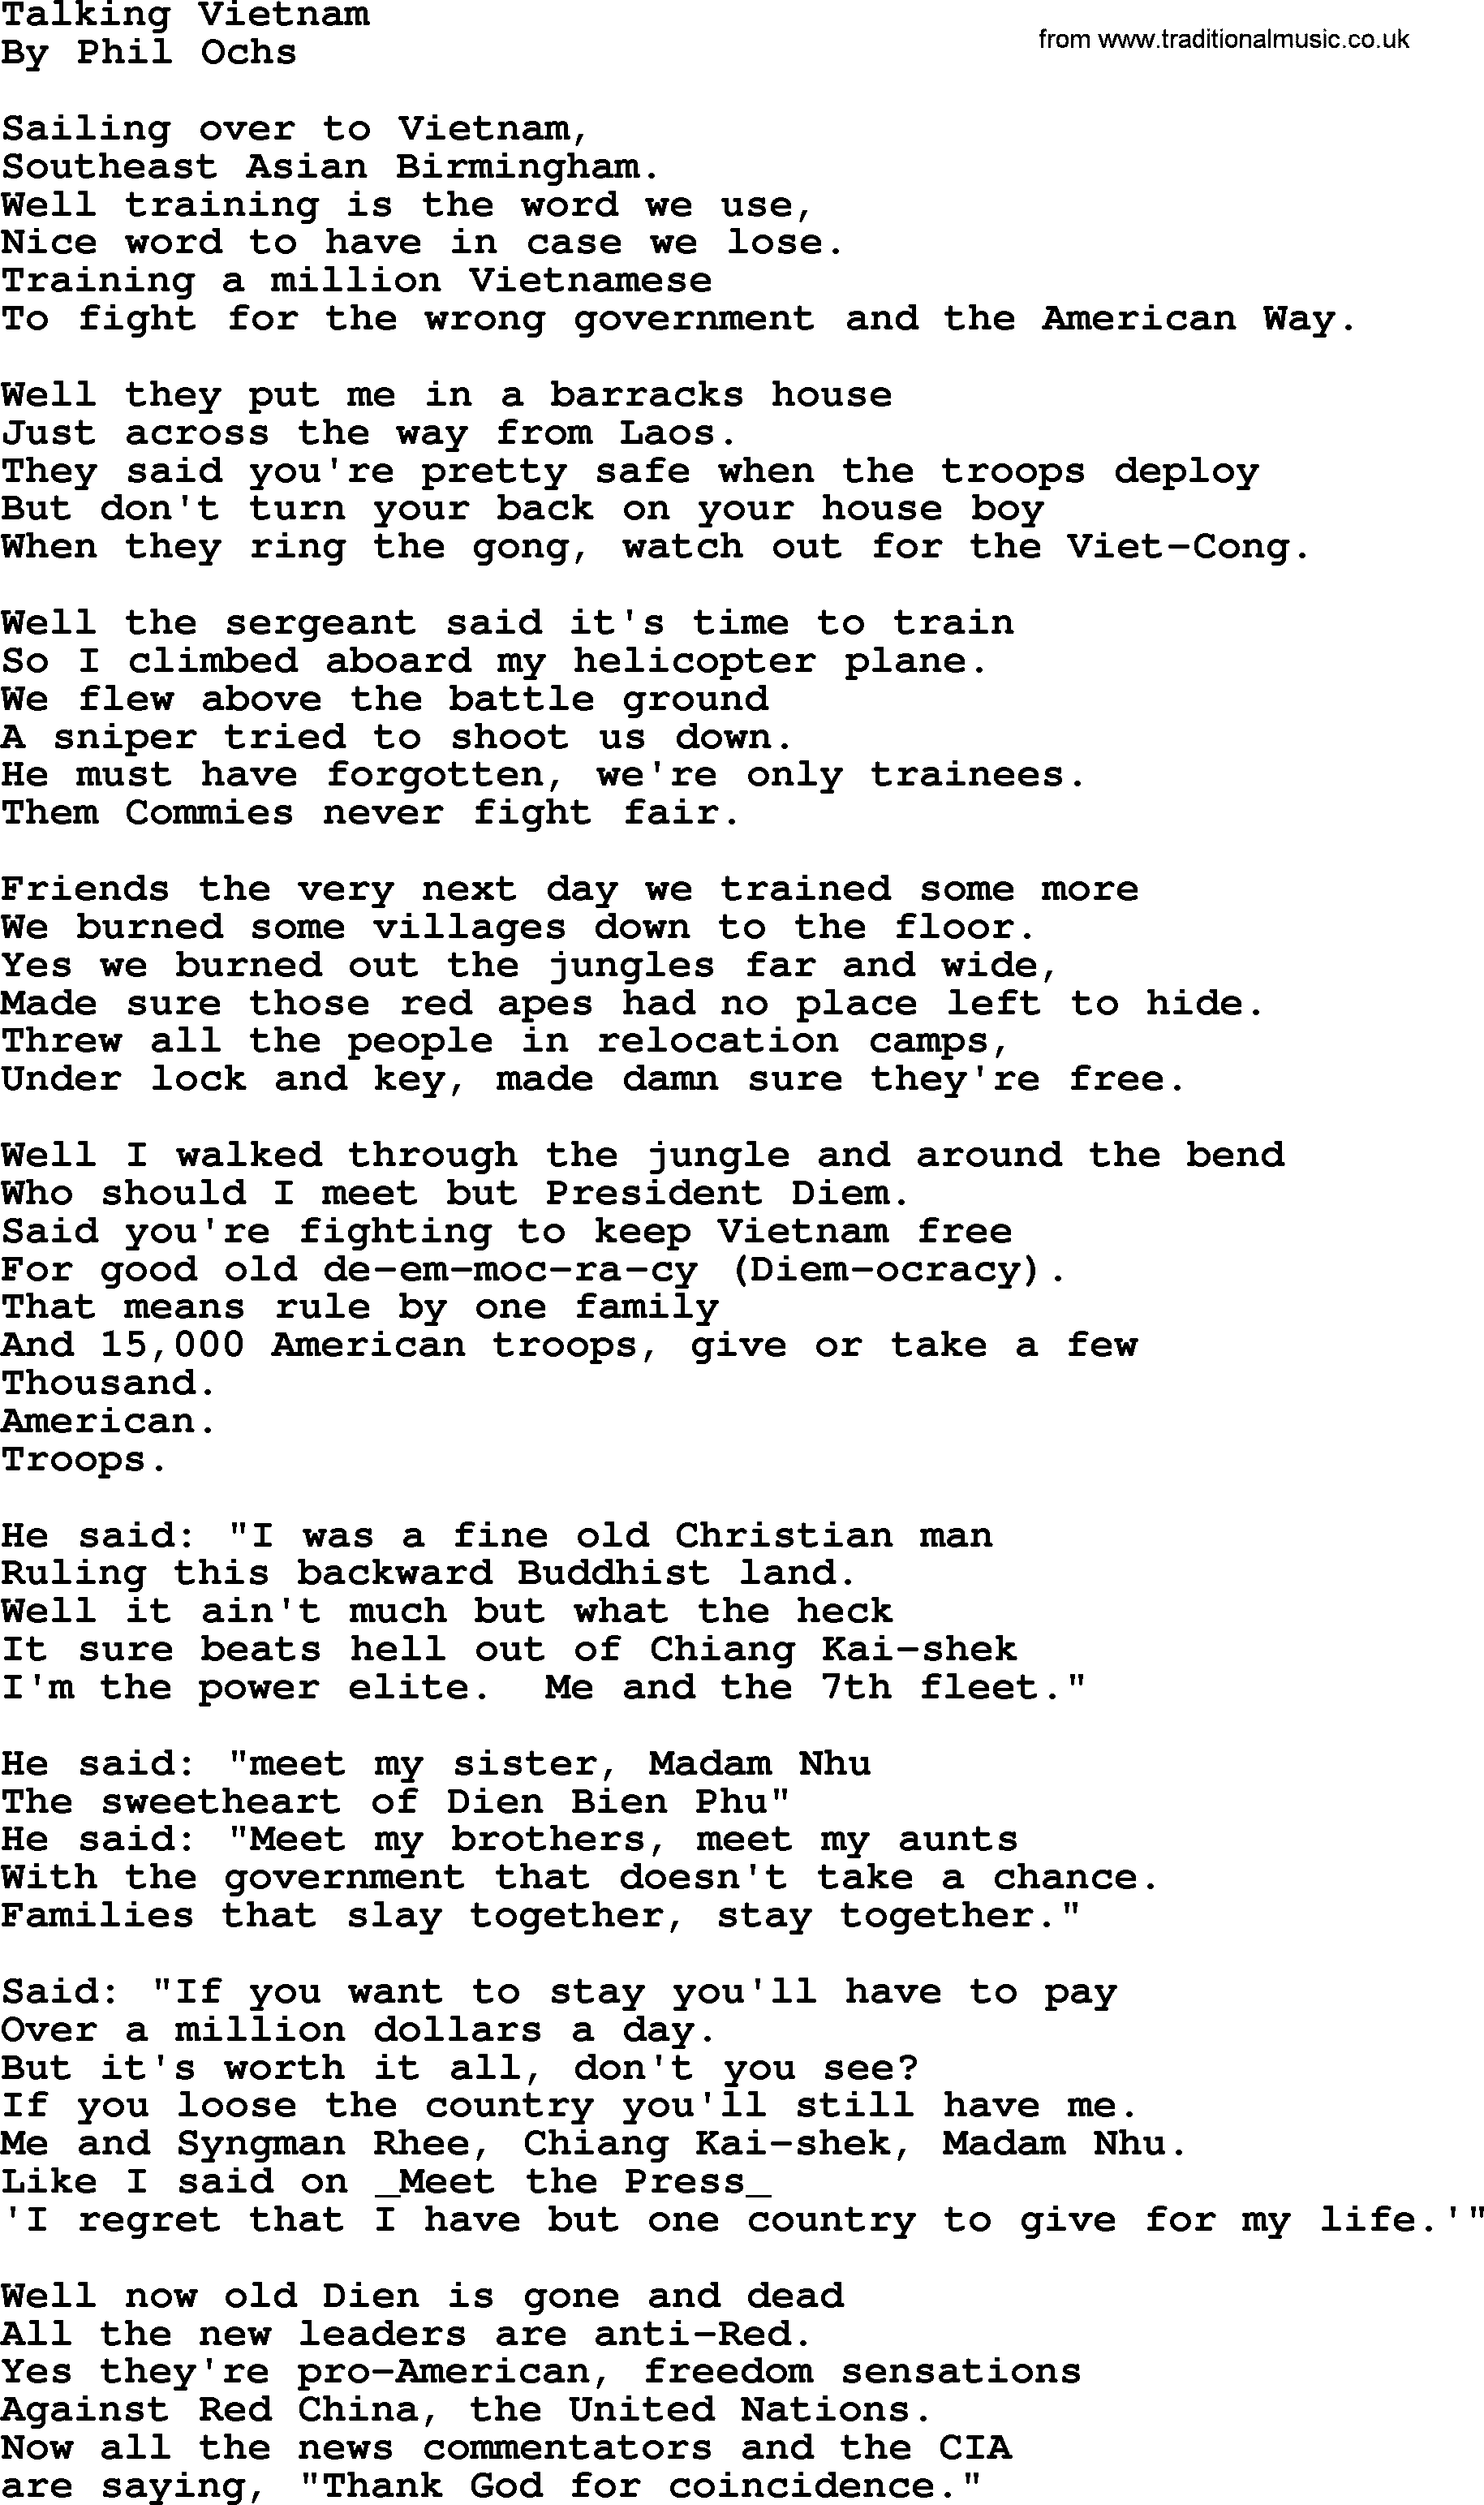 Phil Ochs song Talking Vietnam, lyrics